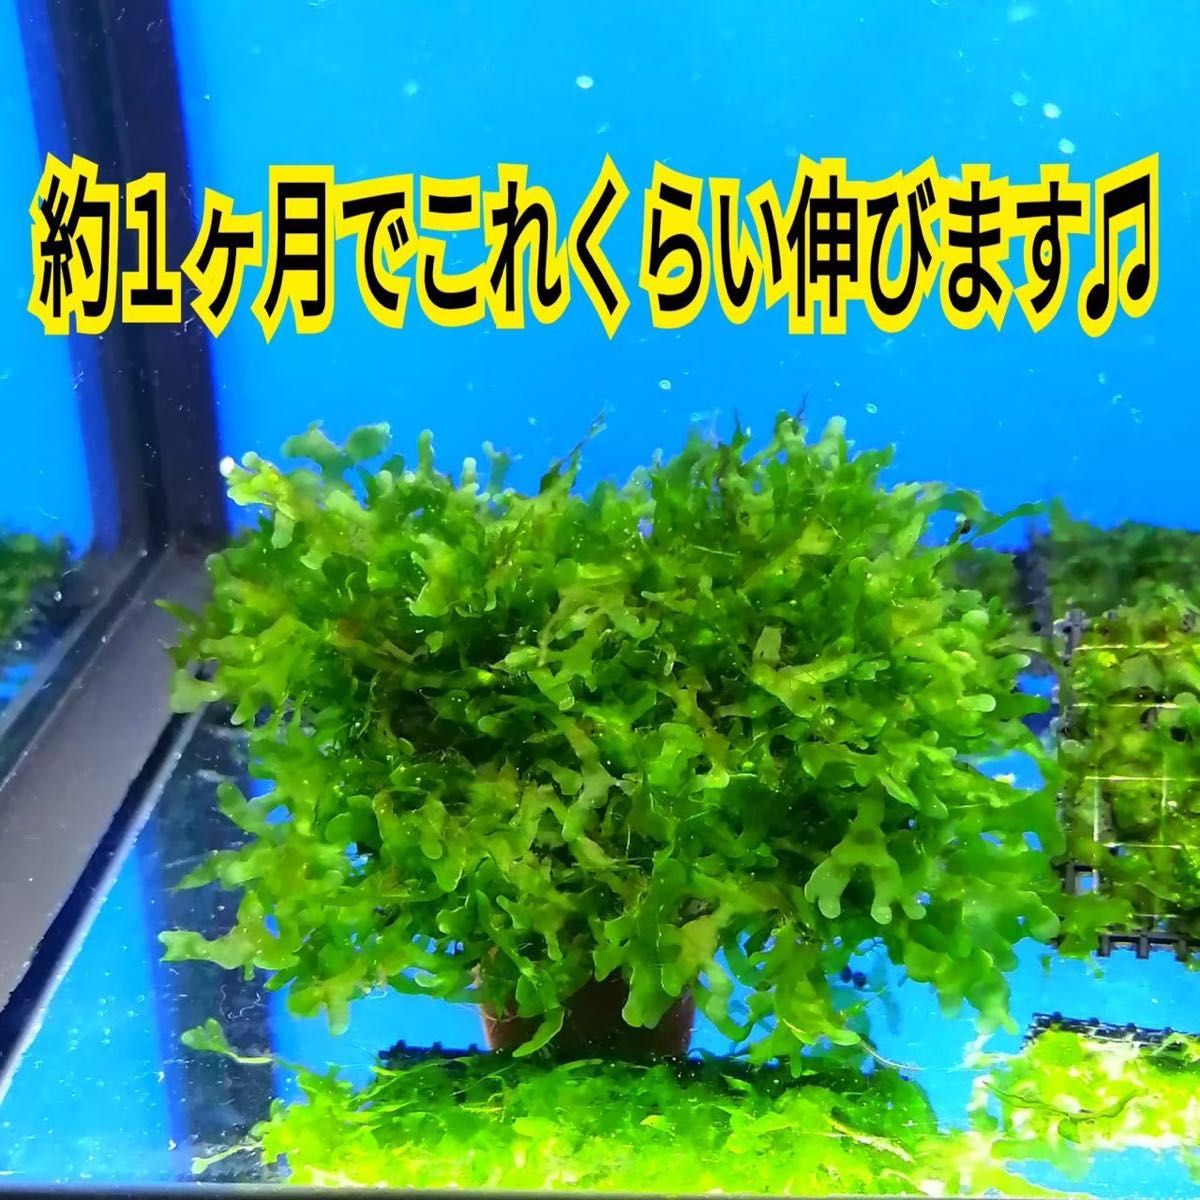 3枚 モスファン ゼニゴケ マット 無農薬 ミナミヌマエビ 水草 隠れ家 メダカ グッピー アクアリウム 水槽 レイアウト 模型